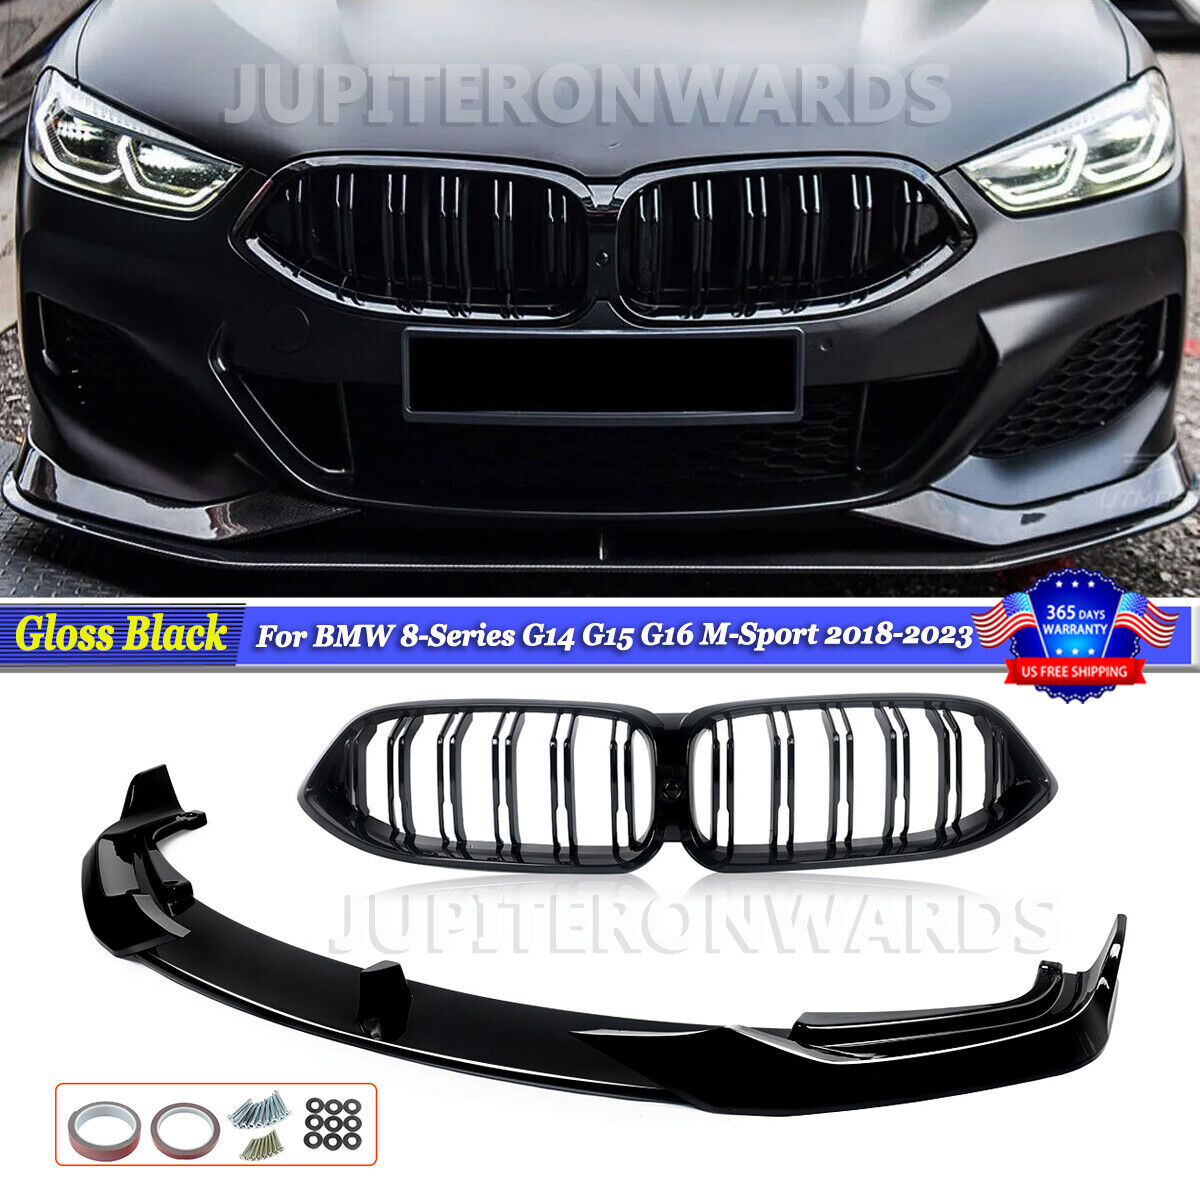 Stain Black Front Lip Splitter+Grilles For BMW G14 G15 G16 840i M850i 2018-2023